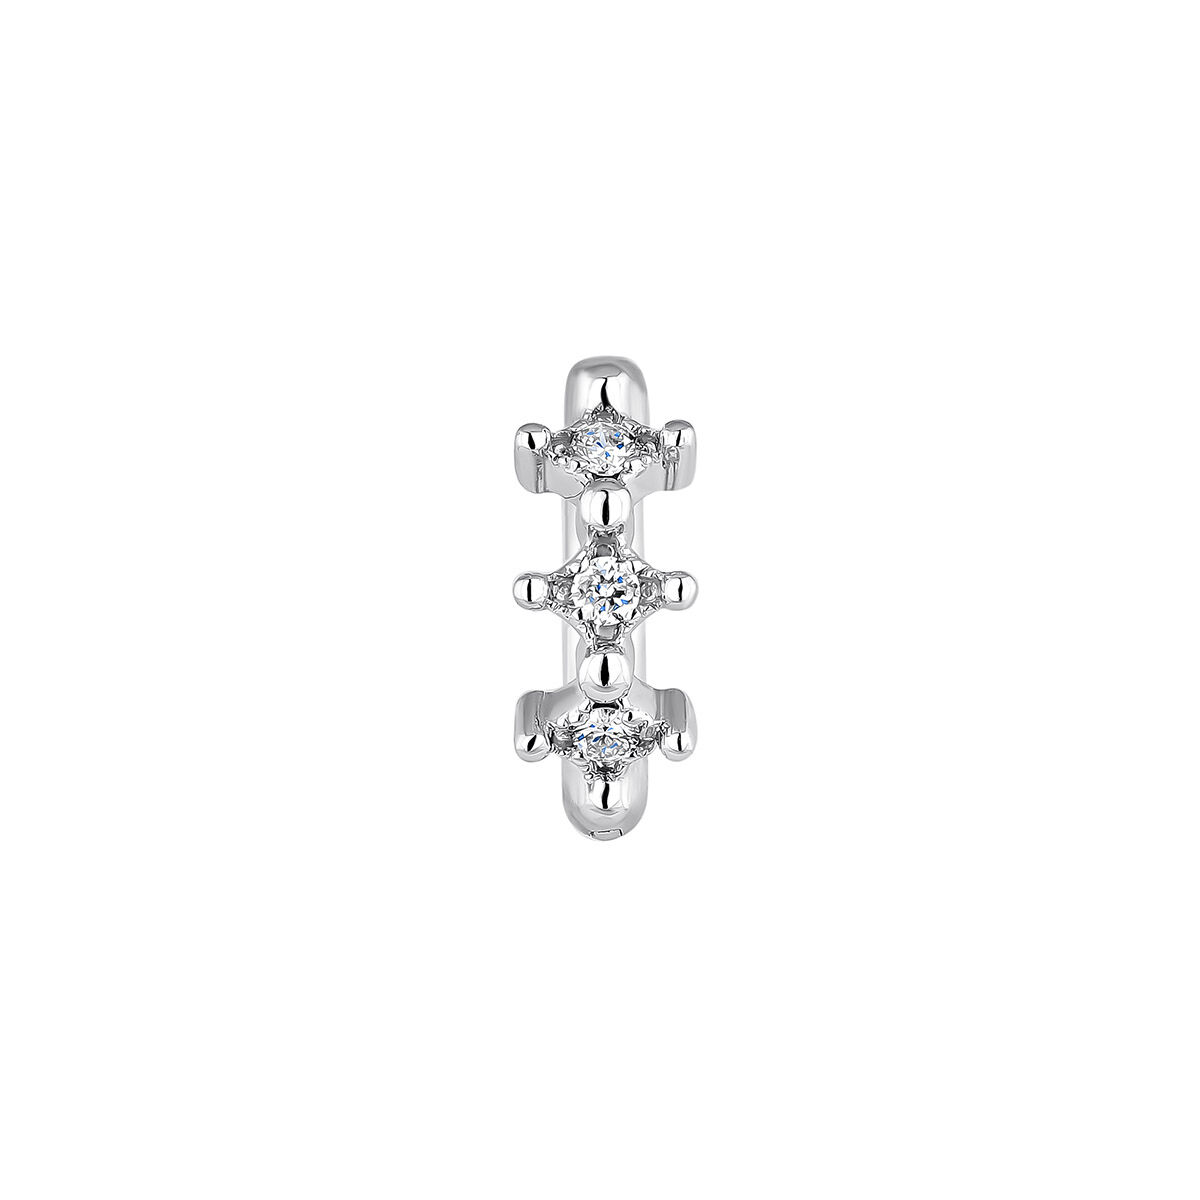 Boucle d'oreille piercing créole trois diamants or blanc 9 ct , J04491-01-H, mainproduct